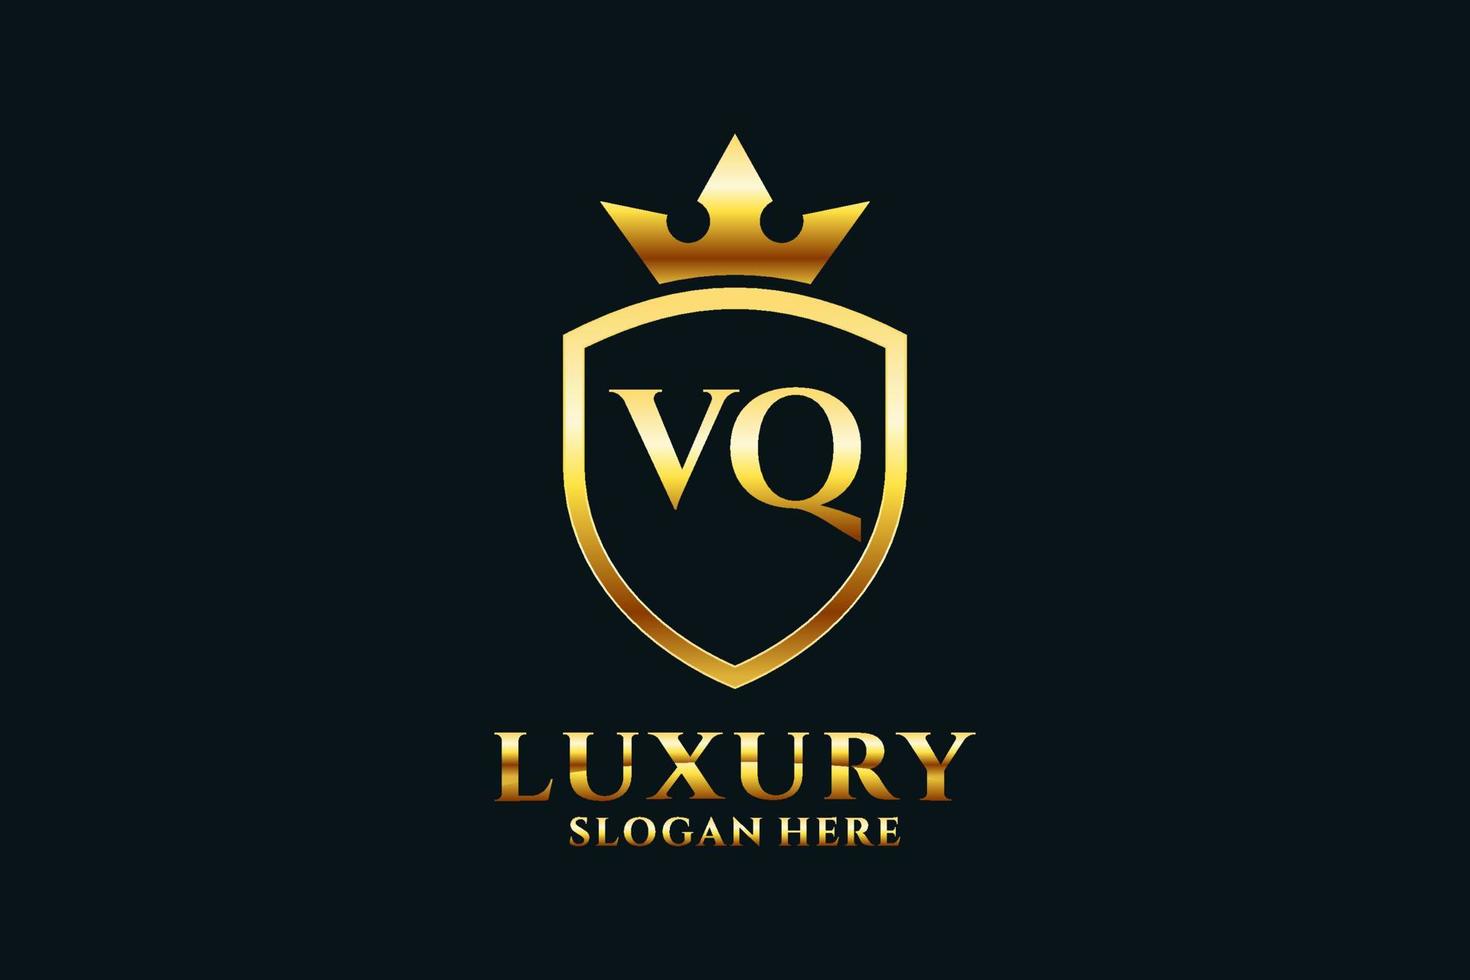 logotipo de monograma de lujo elegante vq inicial o plantilla de placa con pergaminos y corona real - perfecto para proyectos de marca de lujo vector